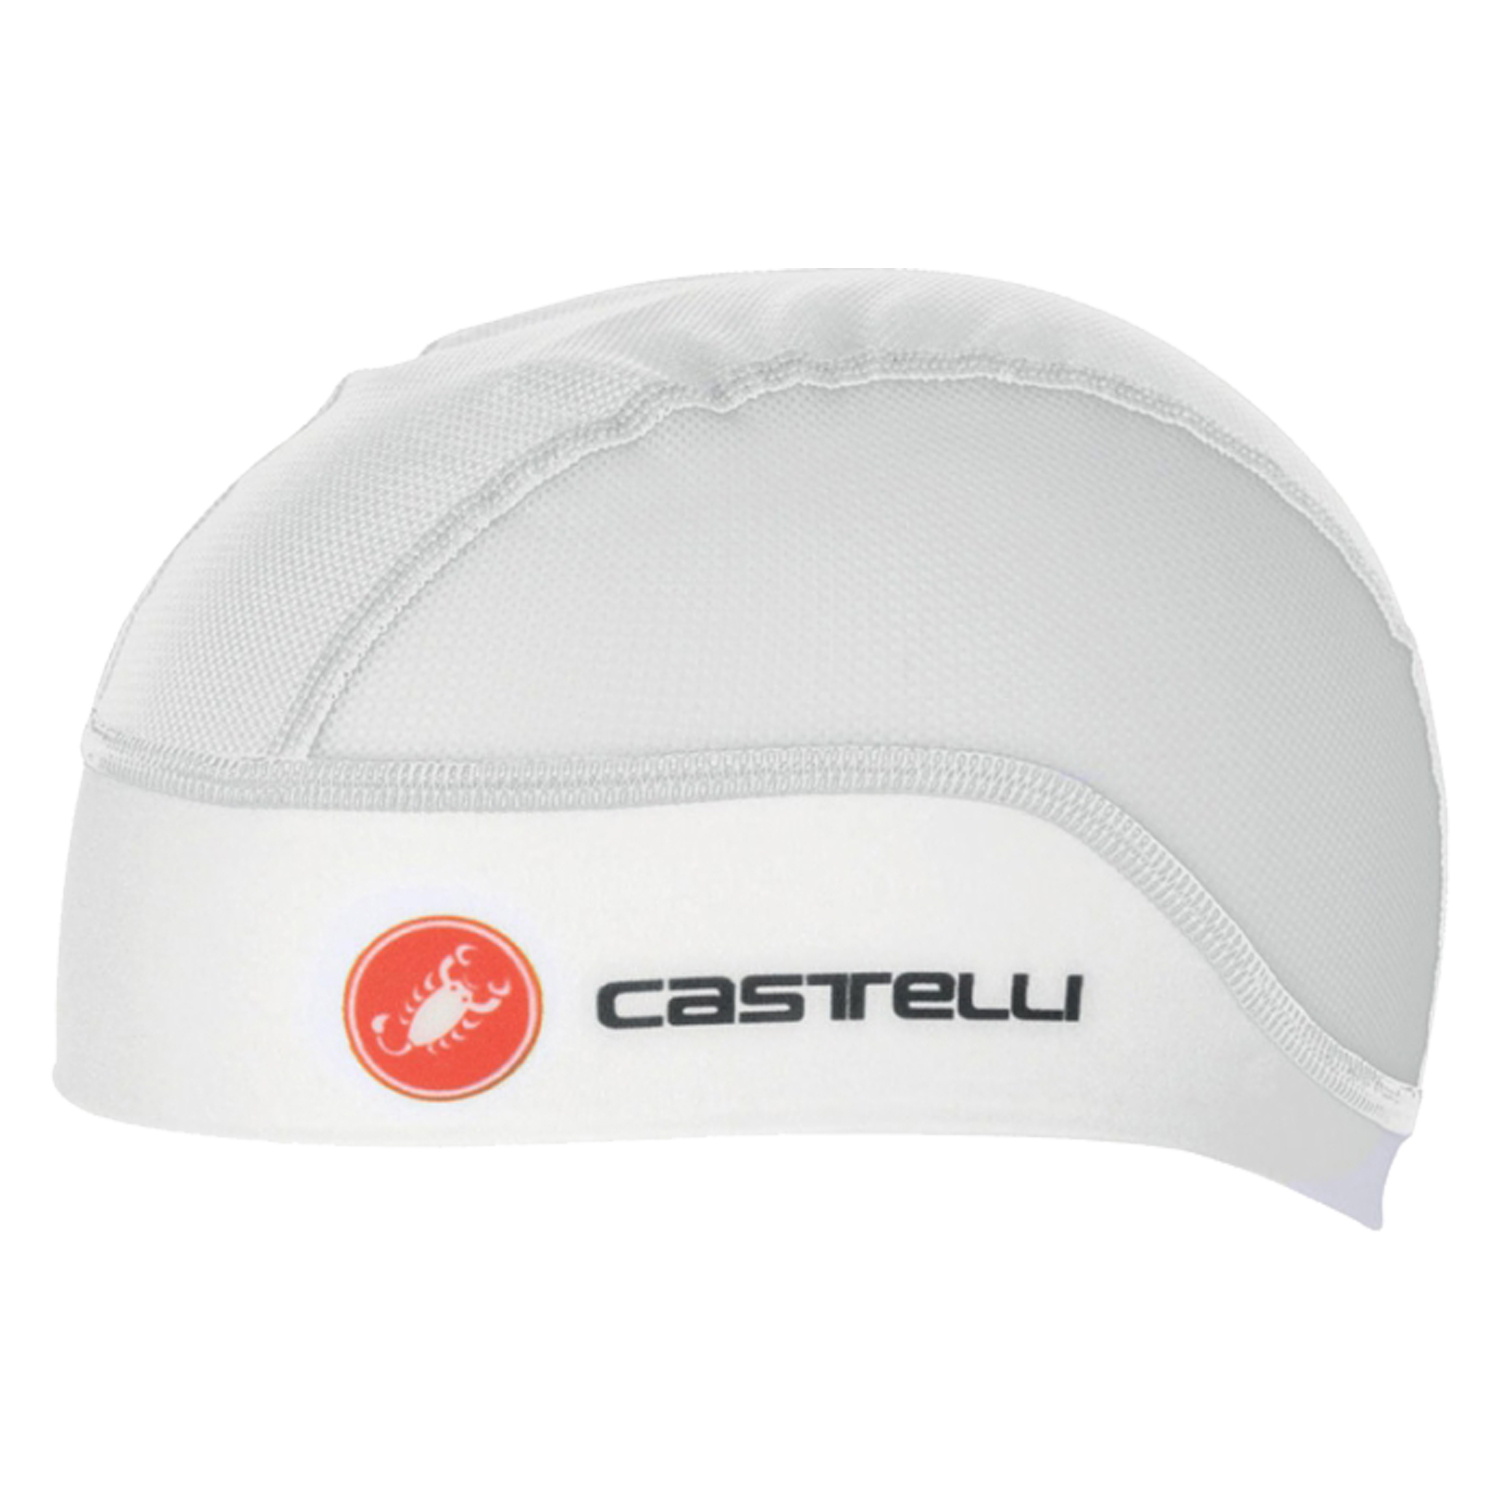 Castelli Summer skullcap